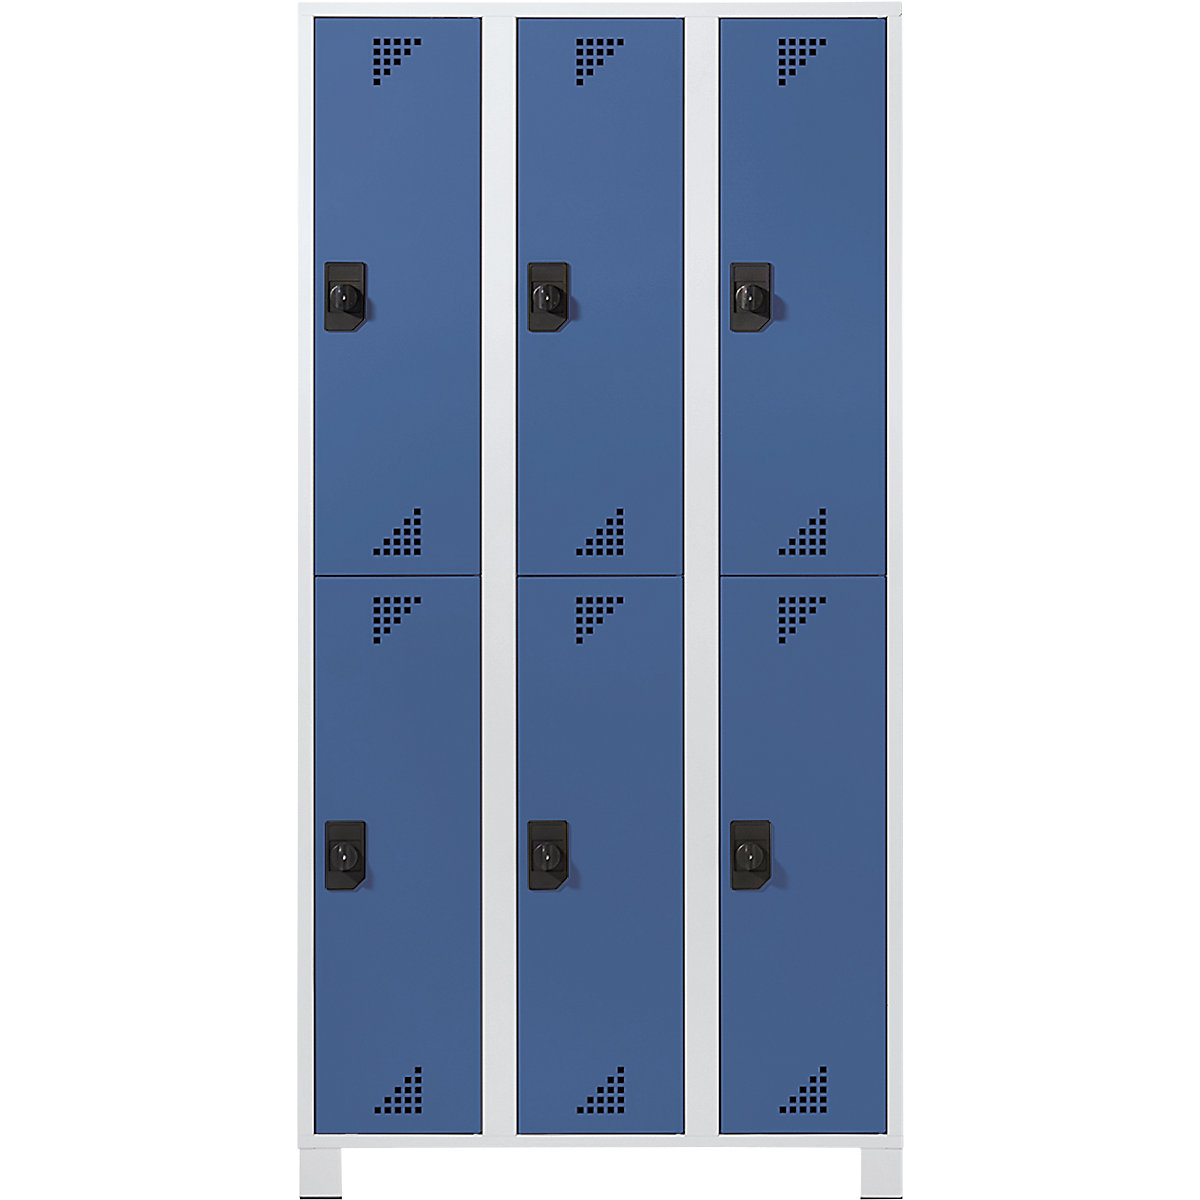 EUROKRAFTpro – Vestiaire à compartiments mi-hauteur, h x l x p 1800 x 900 x 500 mm, 6 compartiments, corps gris clair, portes bleu brillant